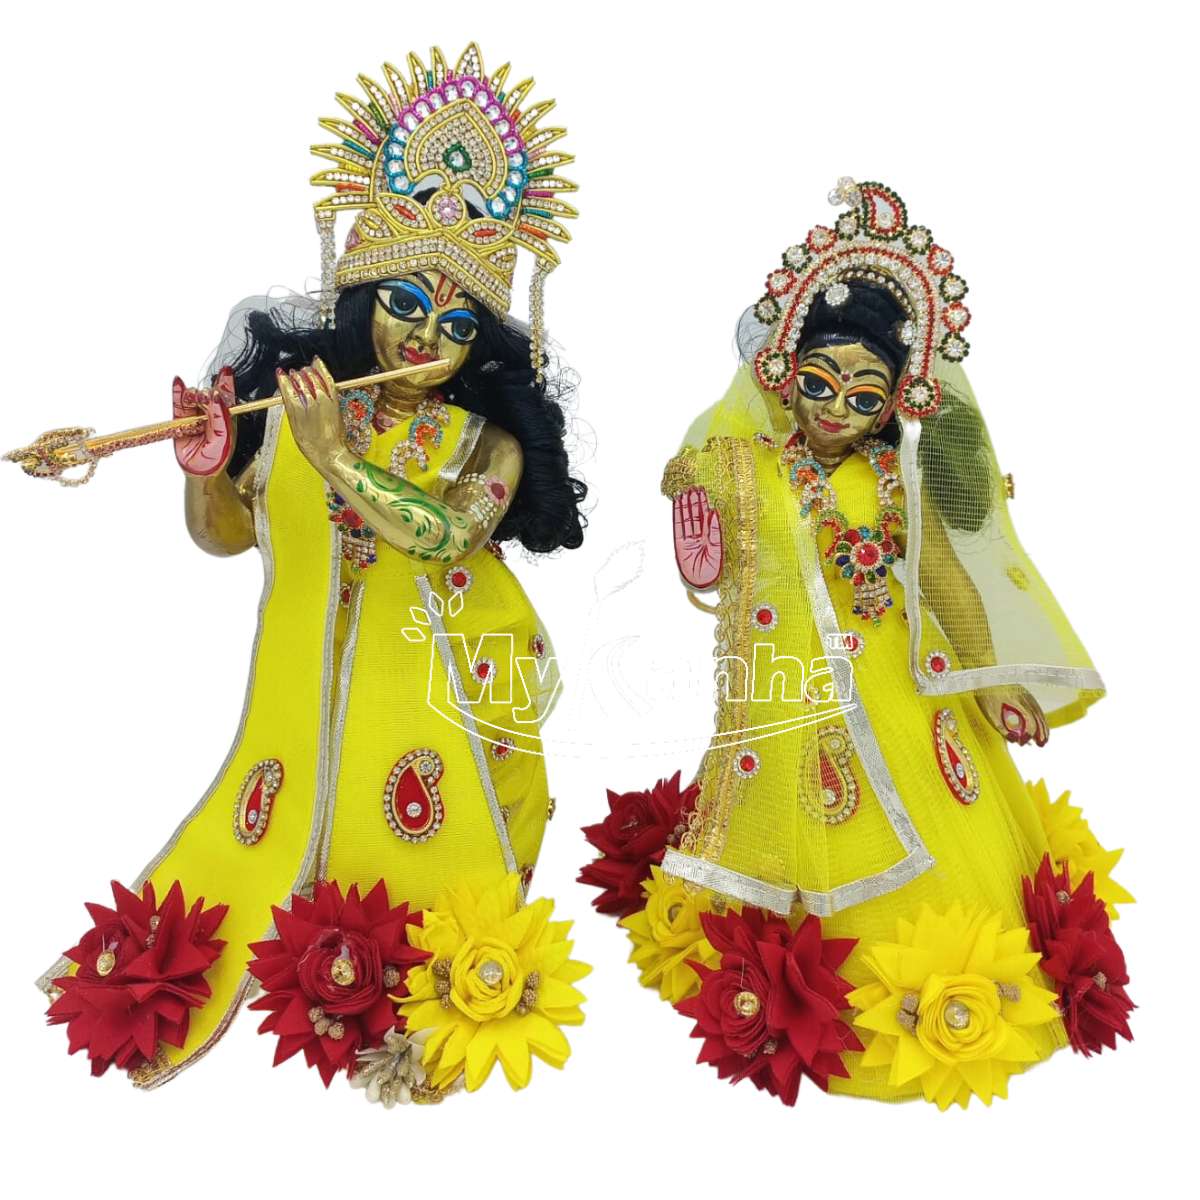 Buy Chircrafts Brass Pital Radha Krishna Yugal Jodi Murti Idol with  Designer Poshak Mukut Pagdi Mala Basuri Shringar Standing Idol Figure  Janmastami Special Diwali Puja 5 INCH 450 Gram (Pink) Online at